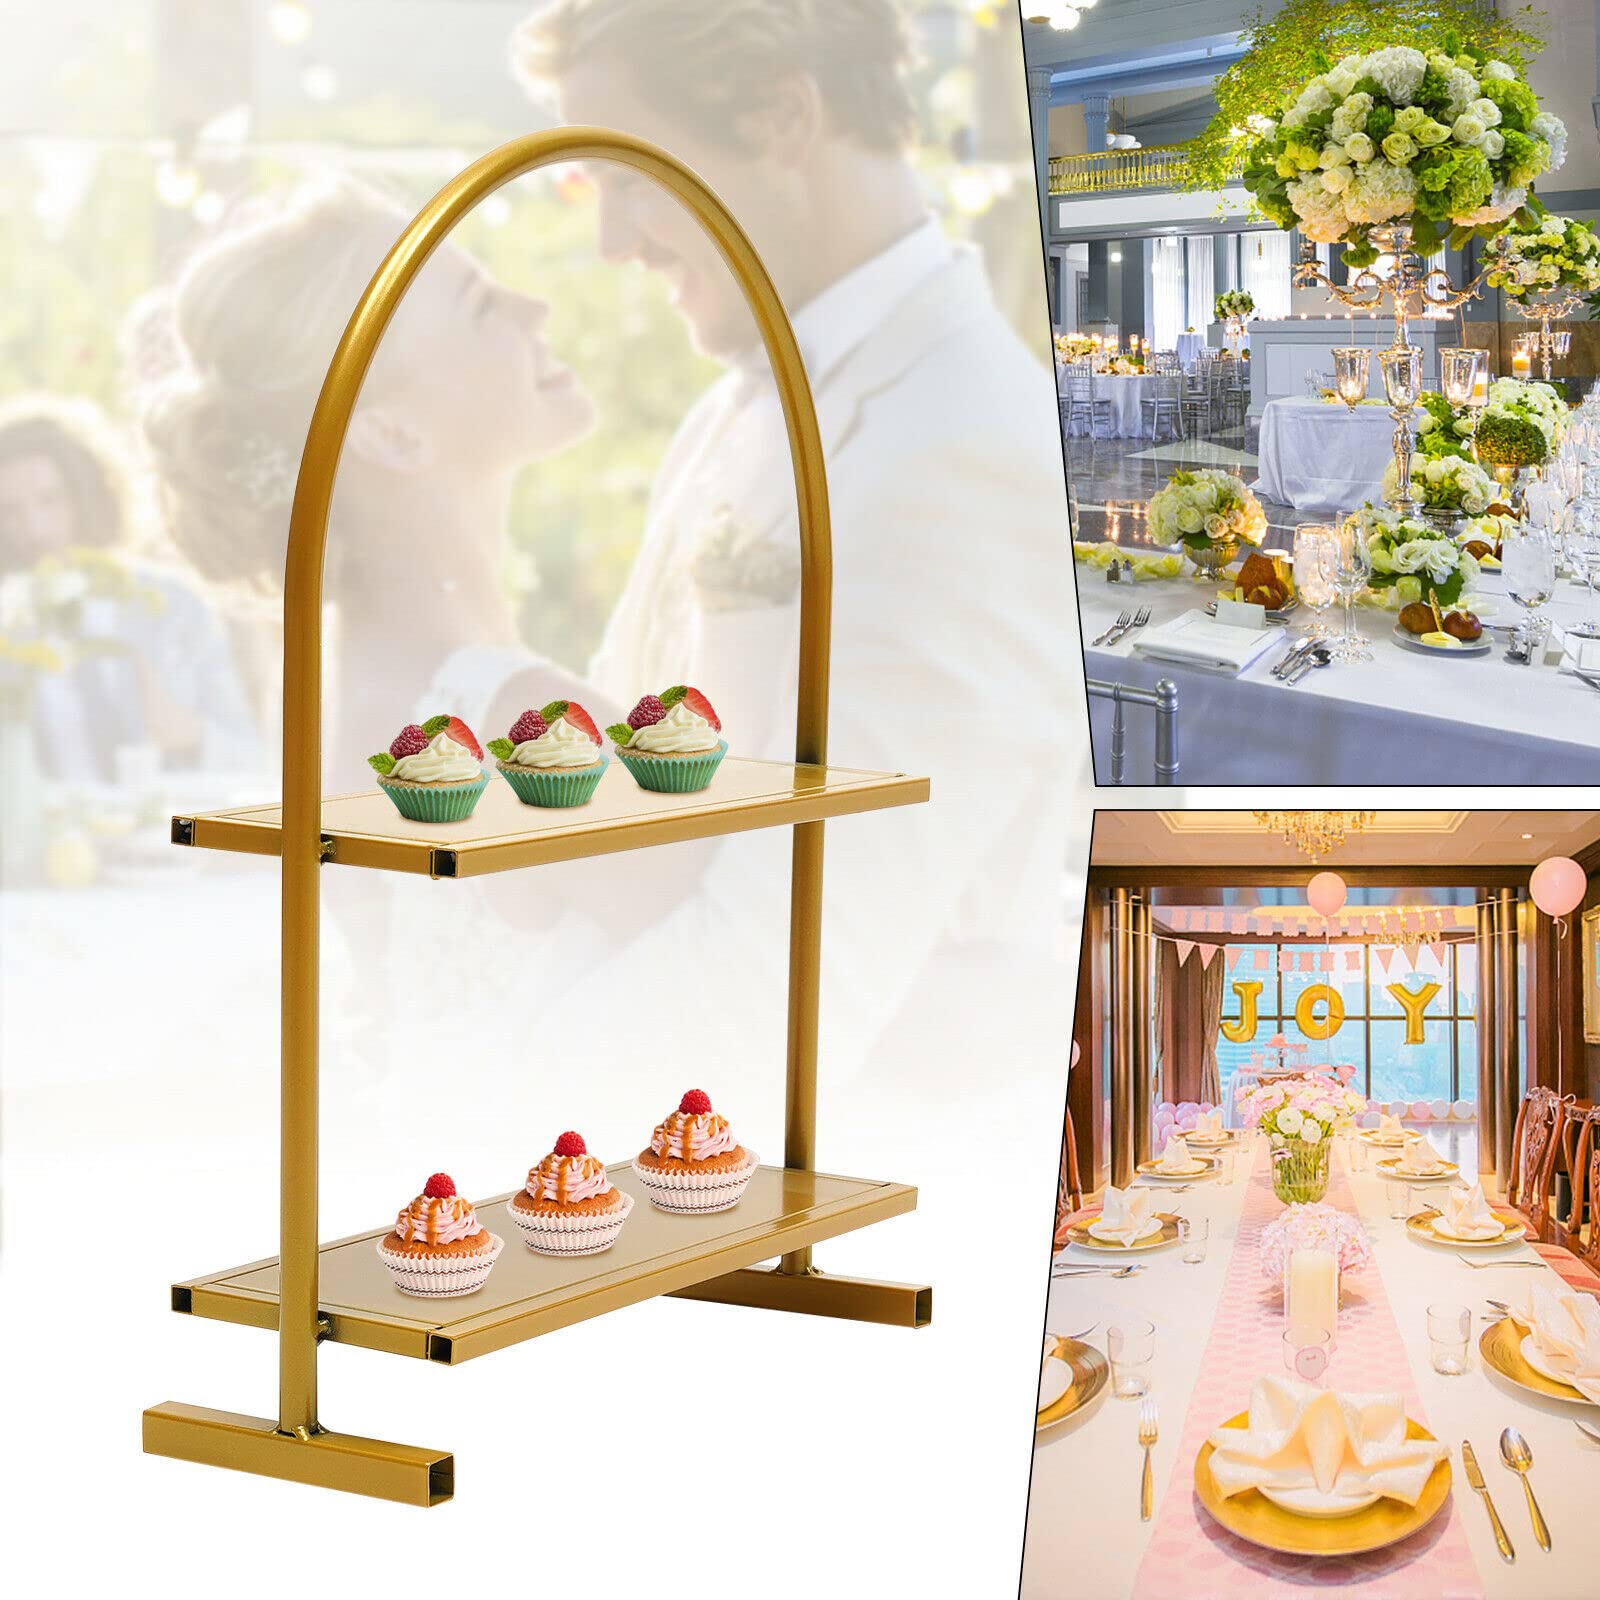 2 Ebenen Metall Cupcake-Ständer Hochzeitsbogen Dessert Kuchen Dessertständer Ausstellungsstand Tortenständ 